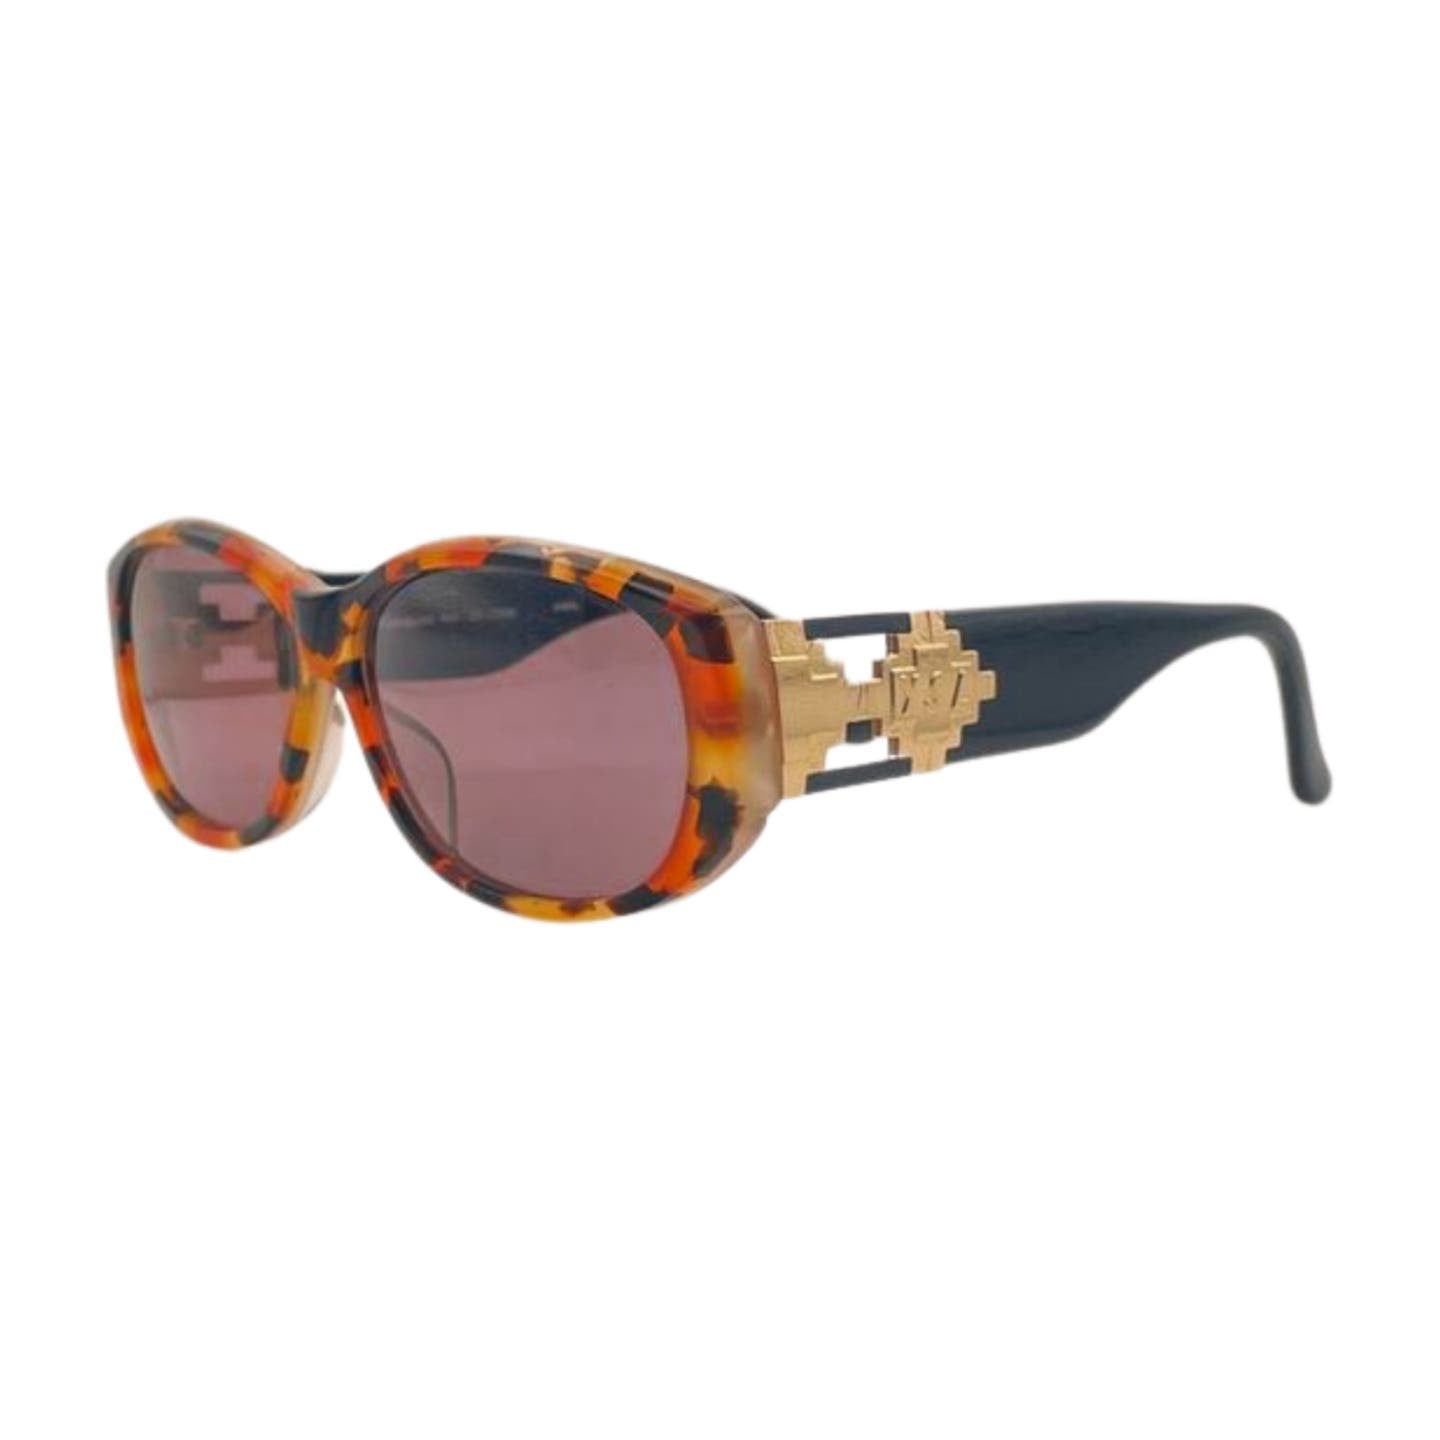 YSL Tortoise Sunglasses - Le Look